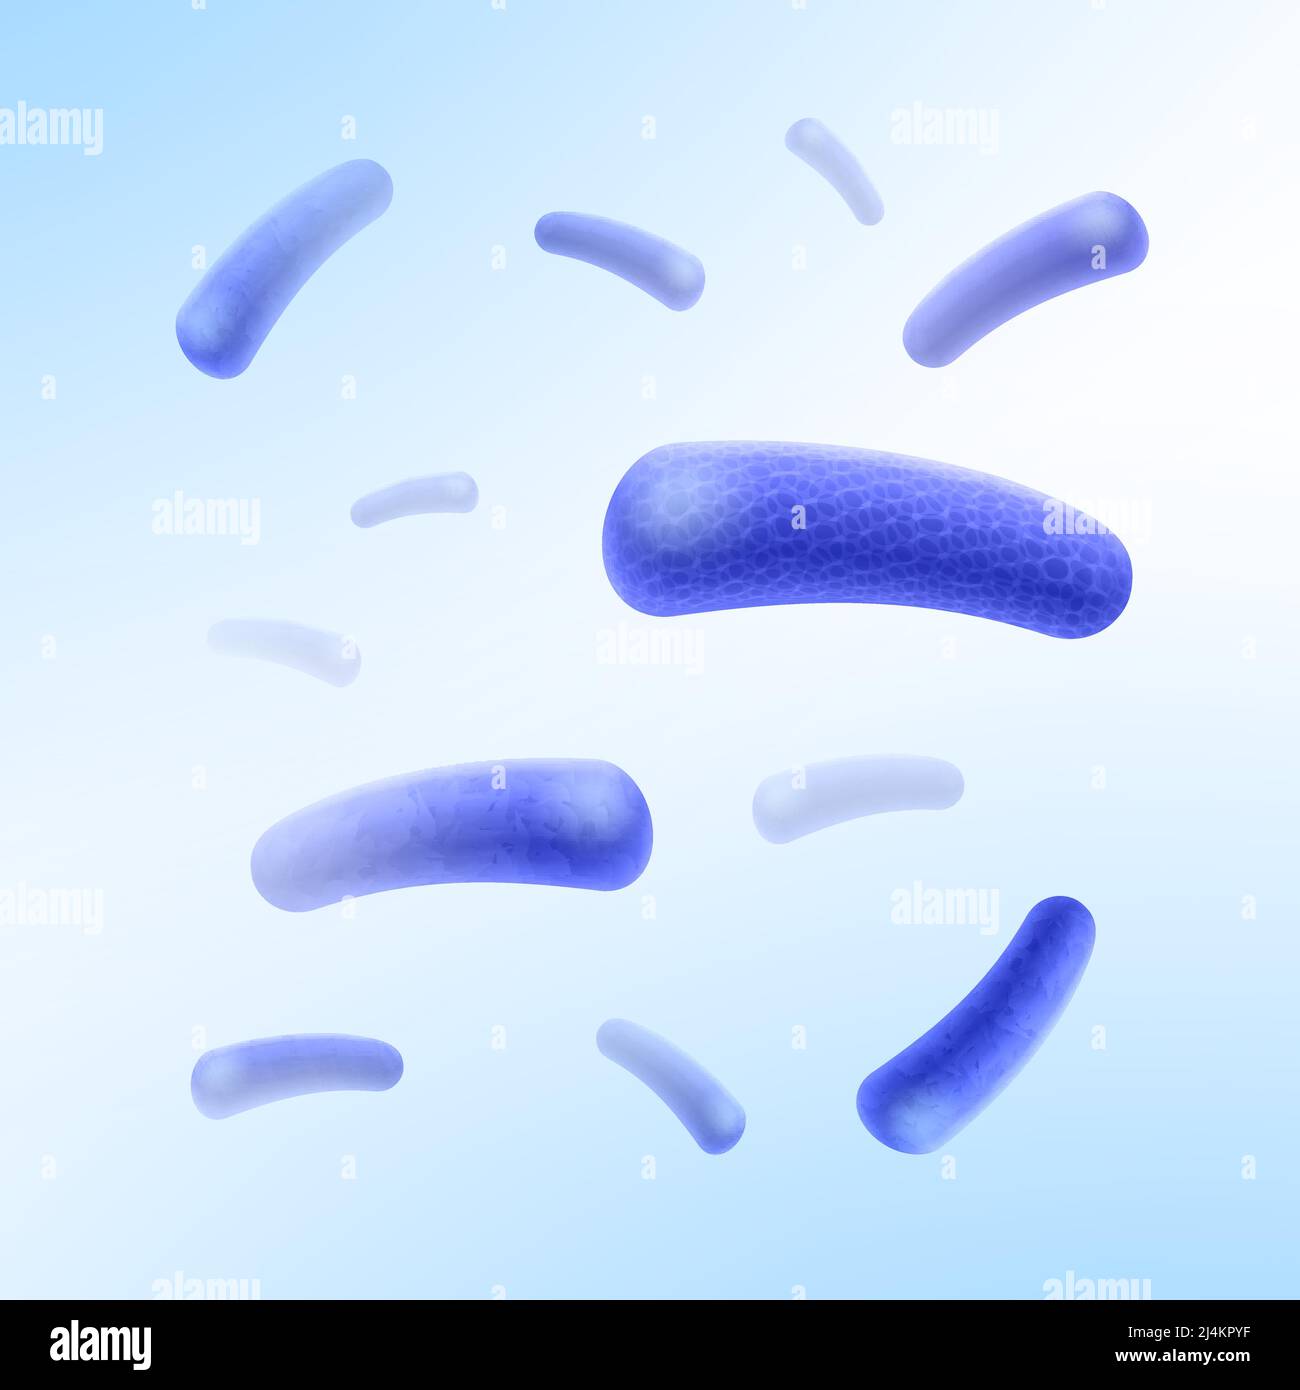 Vektor-blaue Stab-förmige Bazilli Bakterien fliegen chaotisch im weißen Raum Stock Vektor